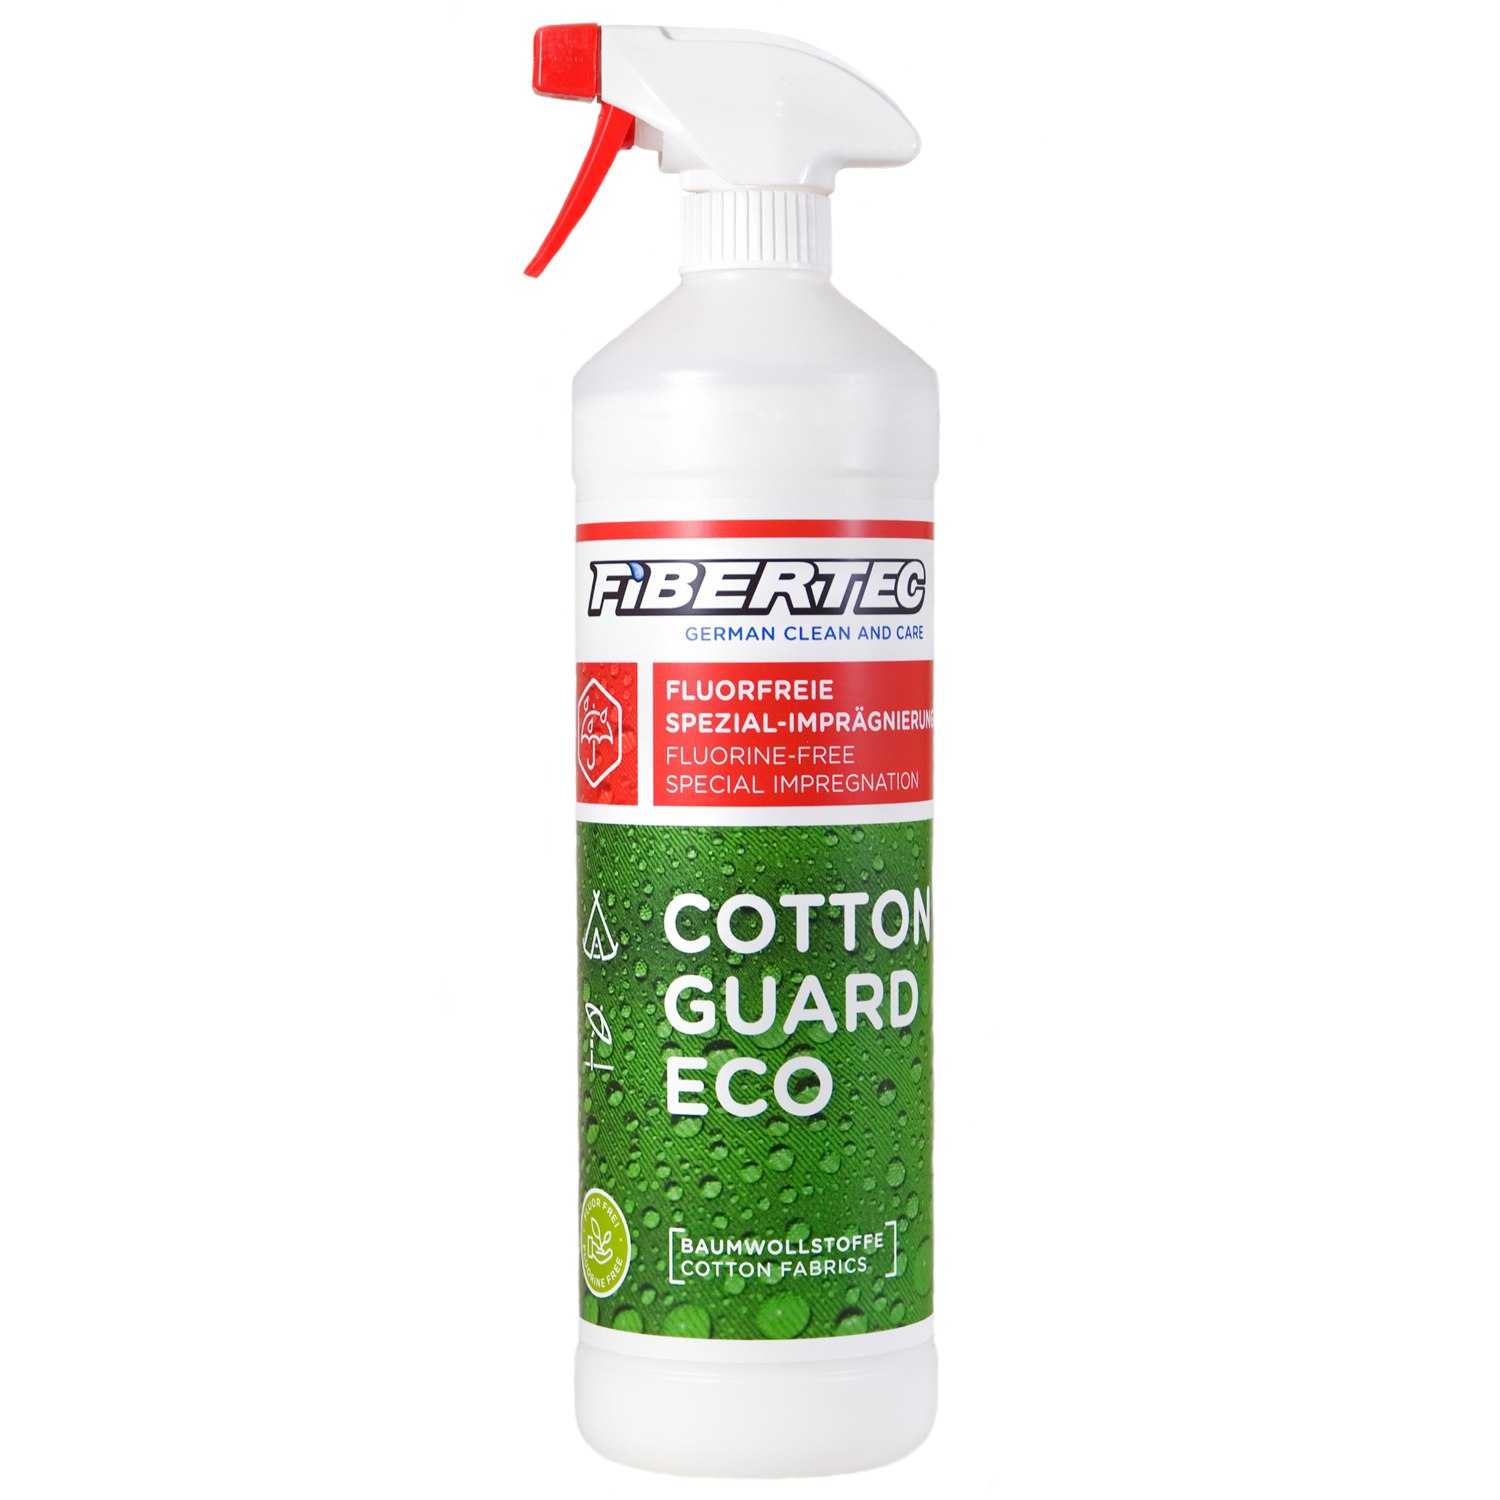 Productfoto van Fibertec Cotton Guard Eco Special Impregnation - 1000ml